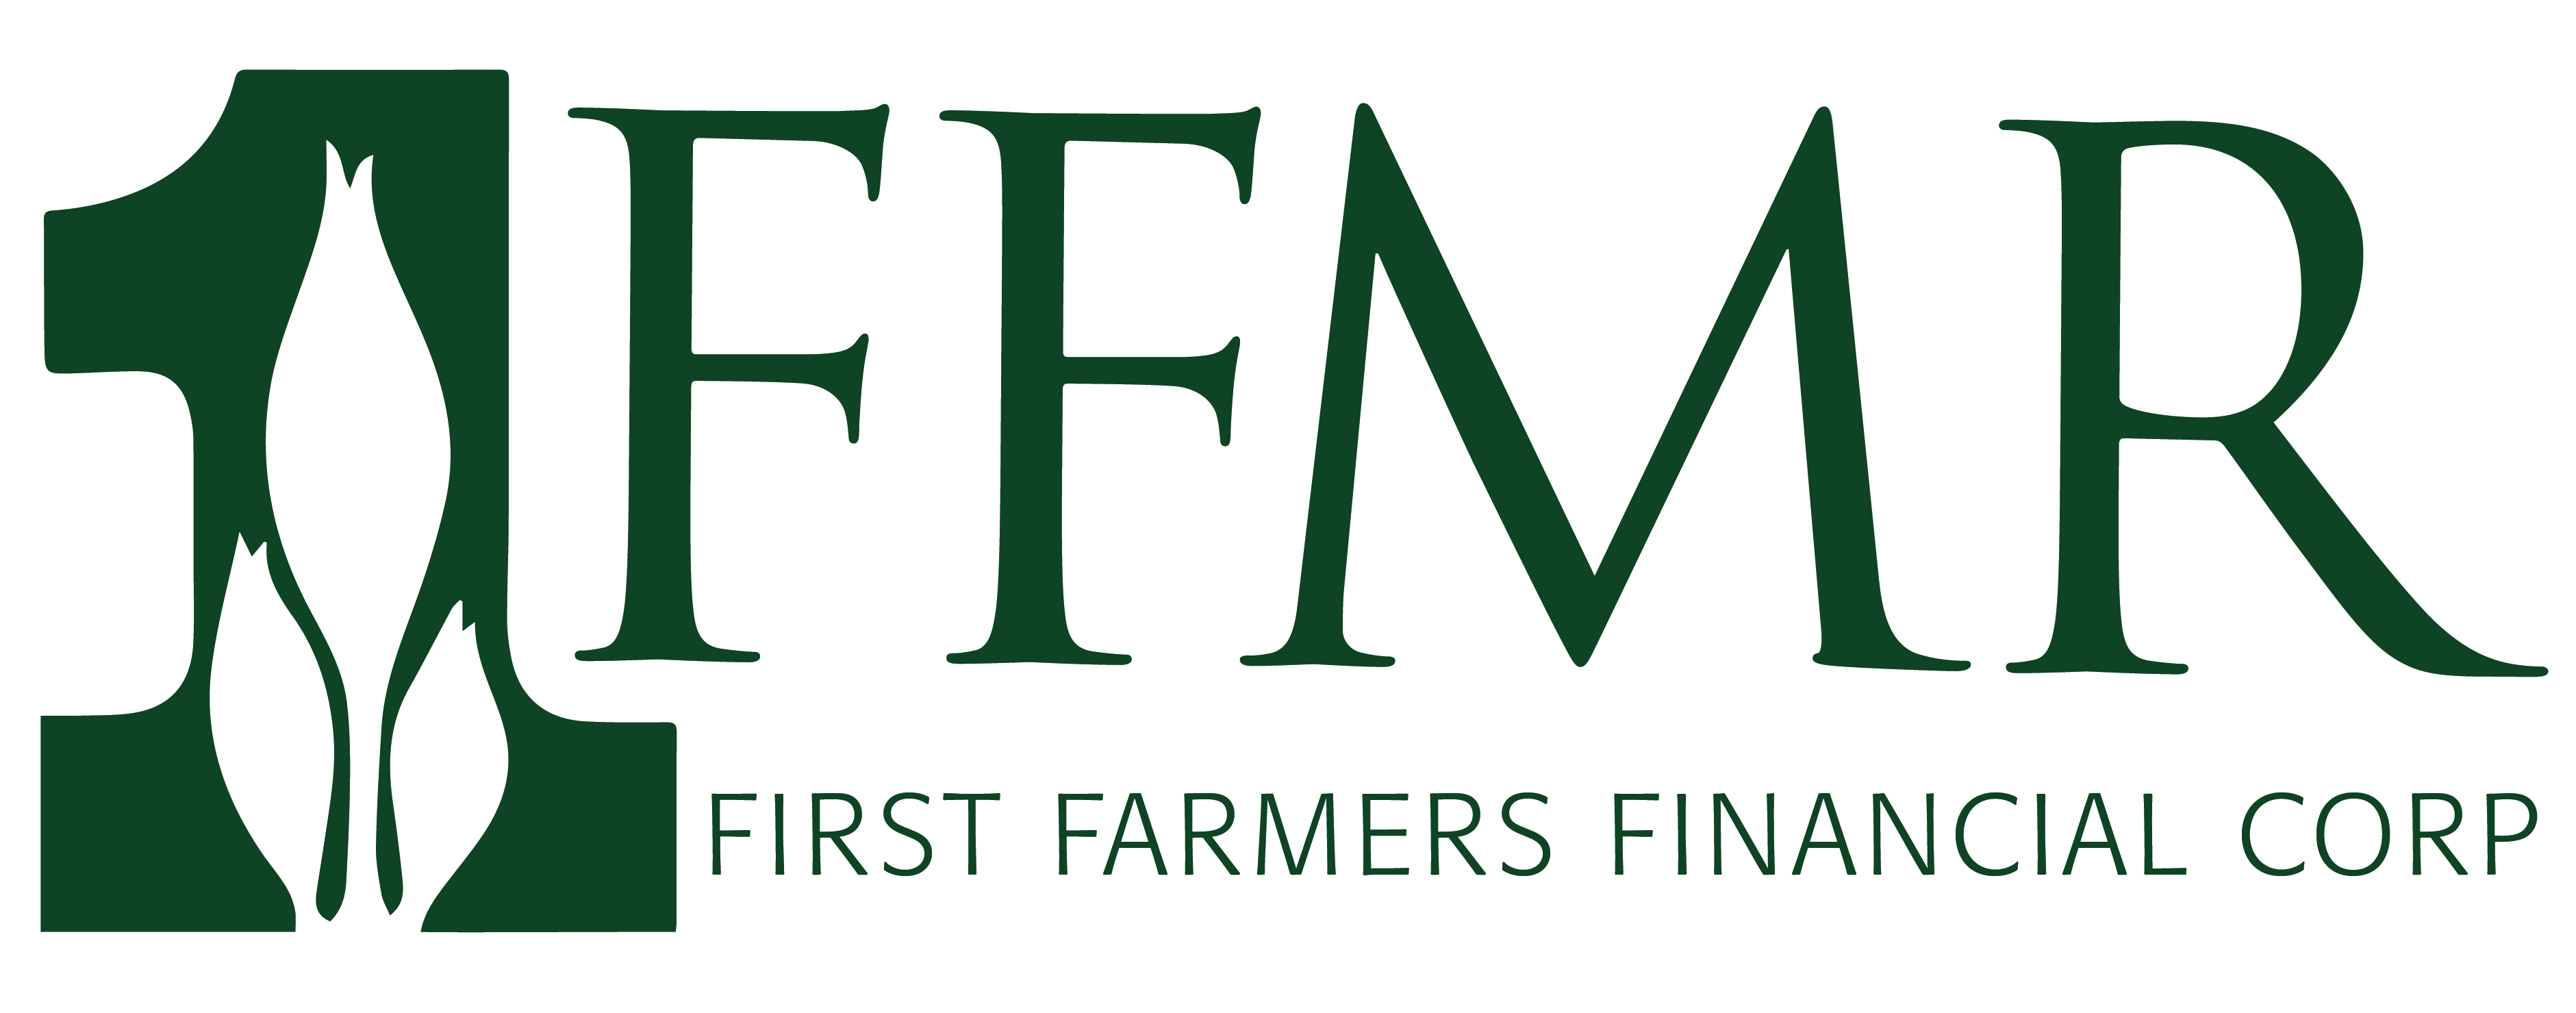 First Farmers Financ